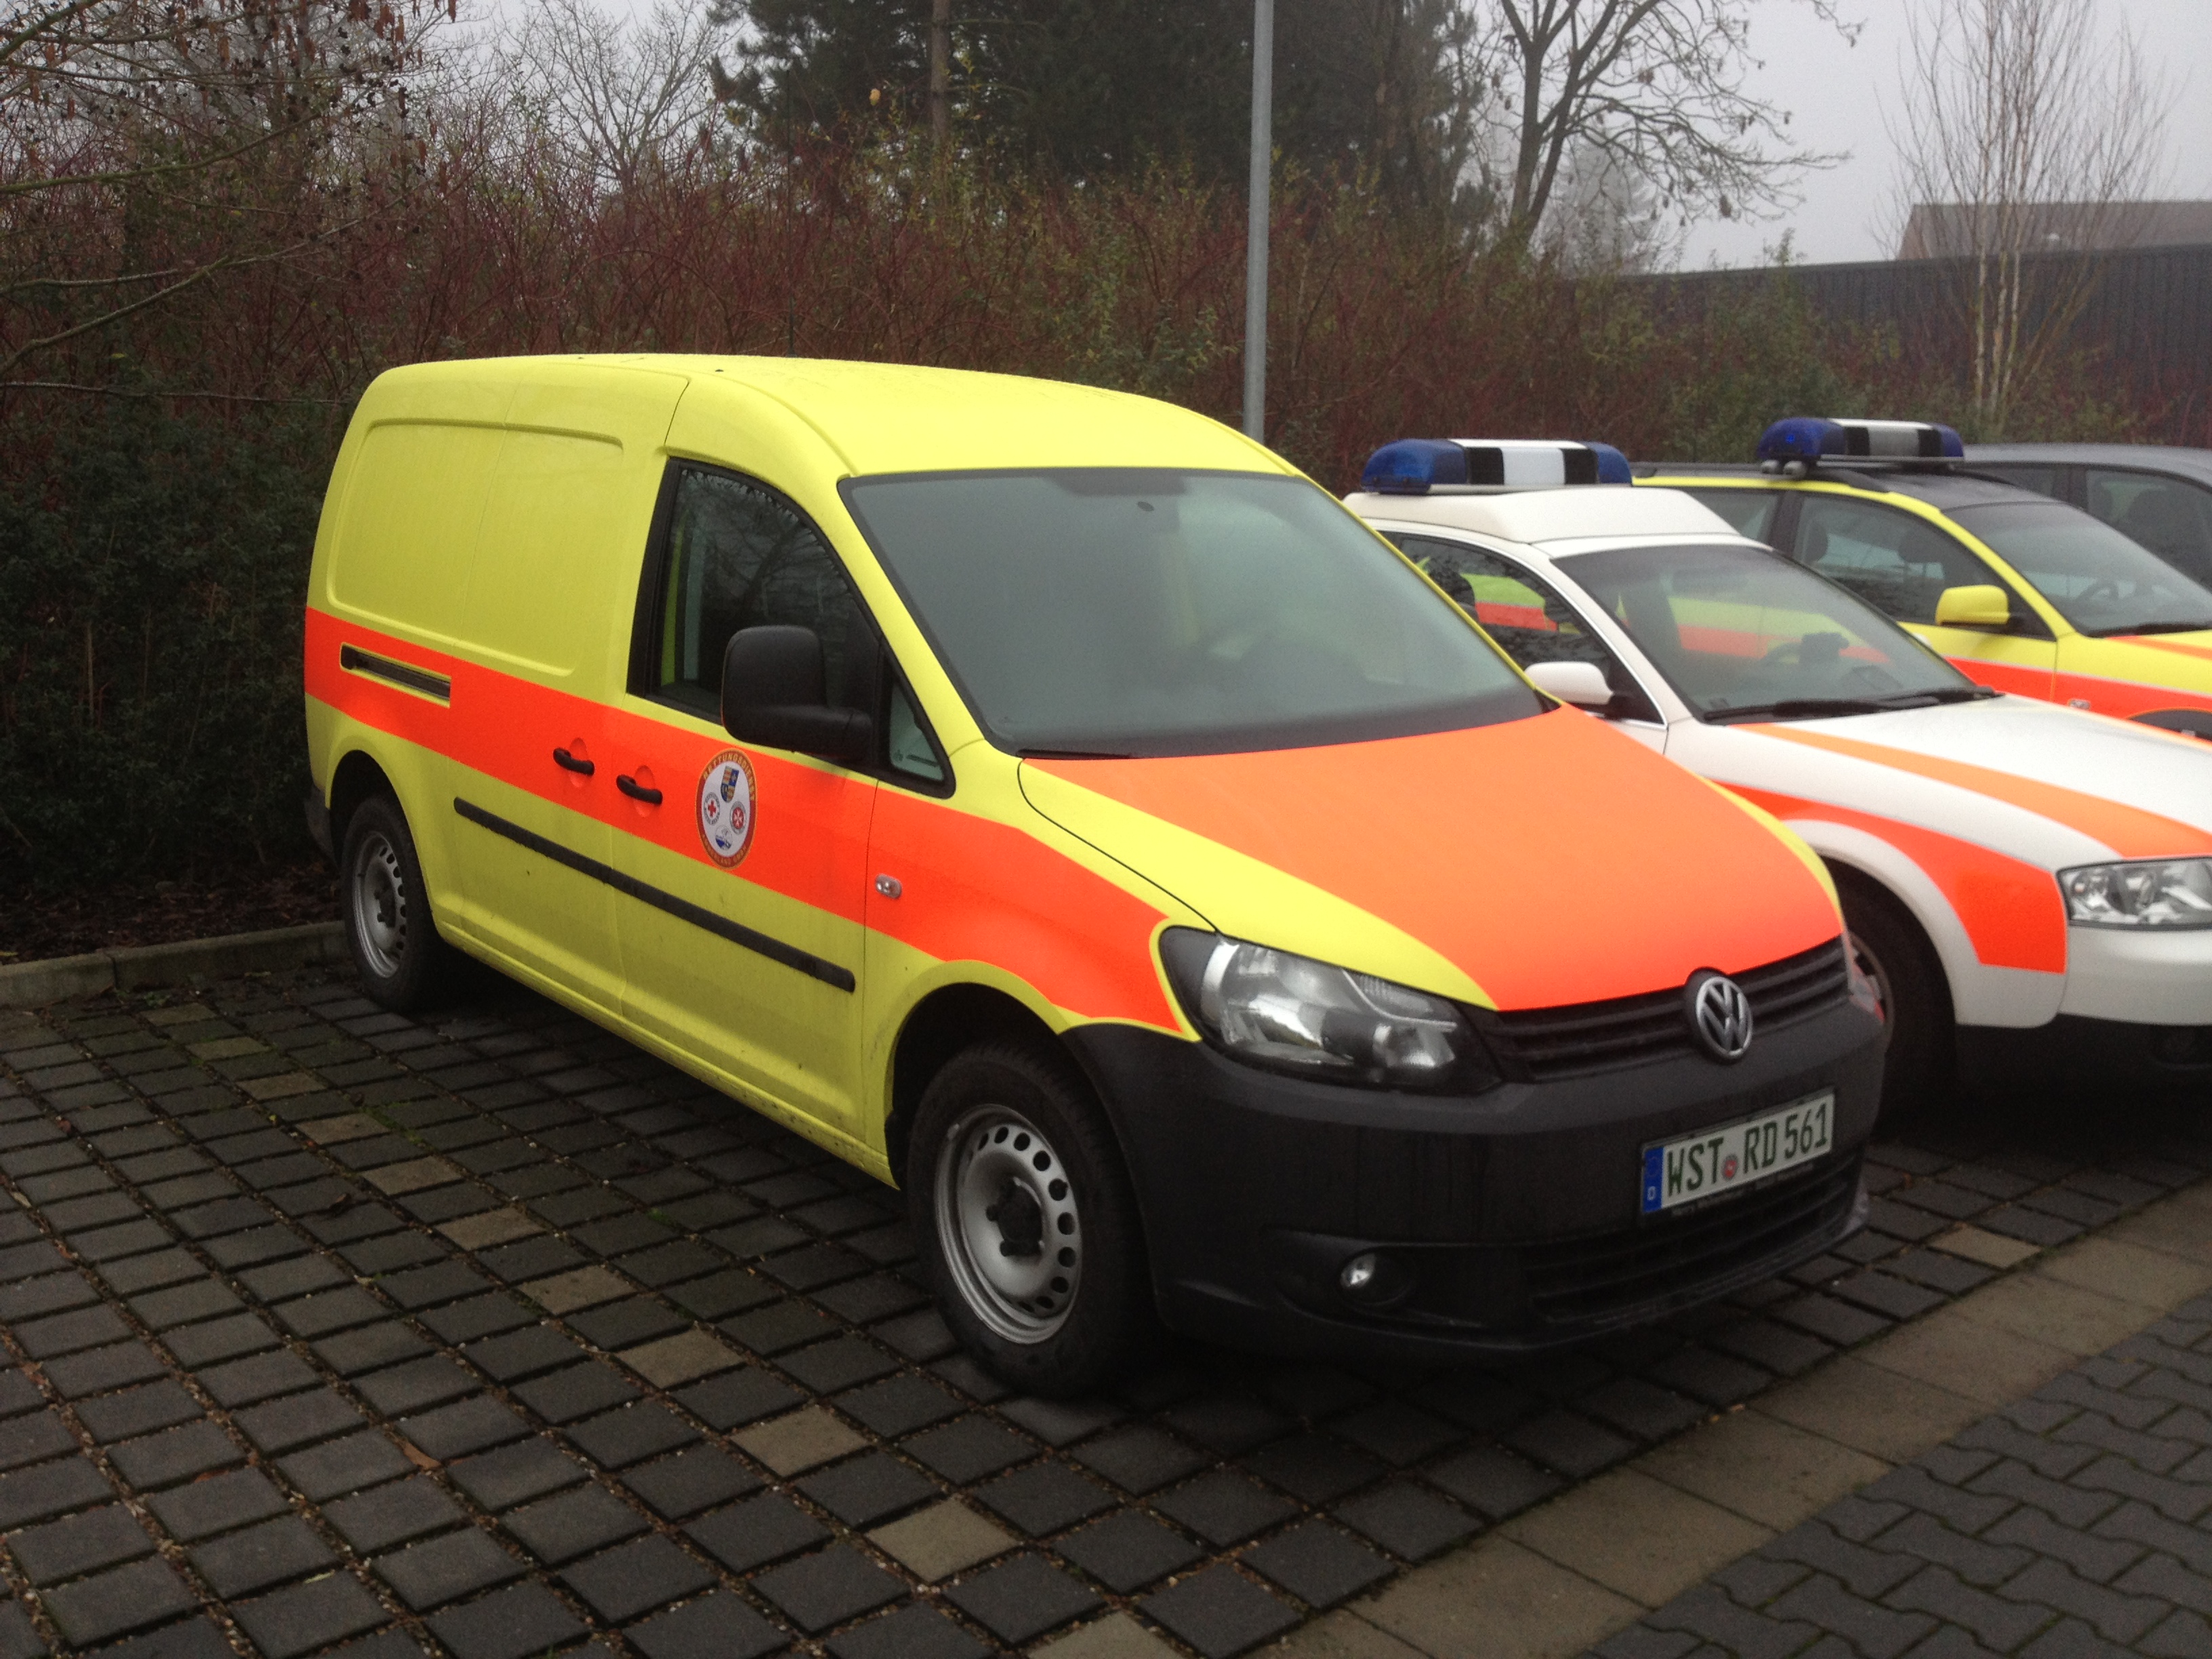 Notfall-Krankenwagen (N-KTW) • Rettungsdienst Ammerland GmbH